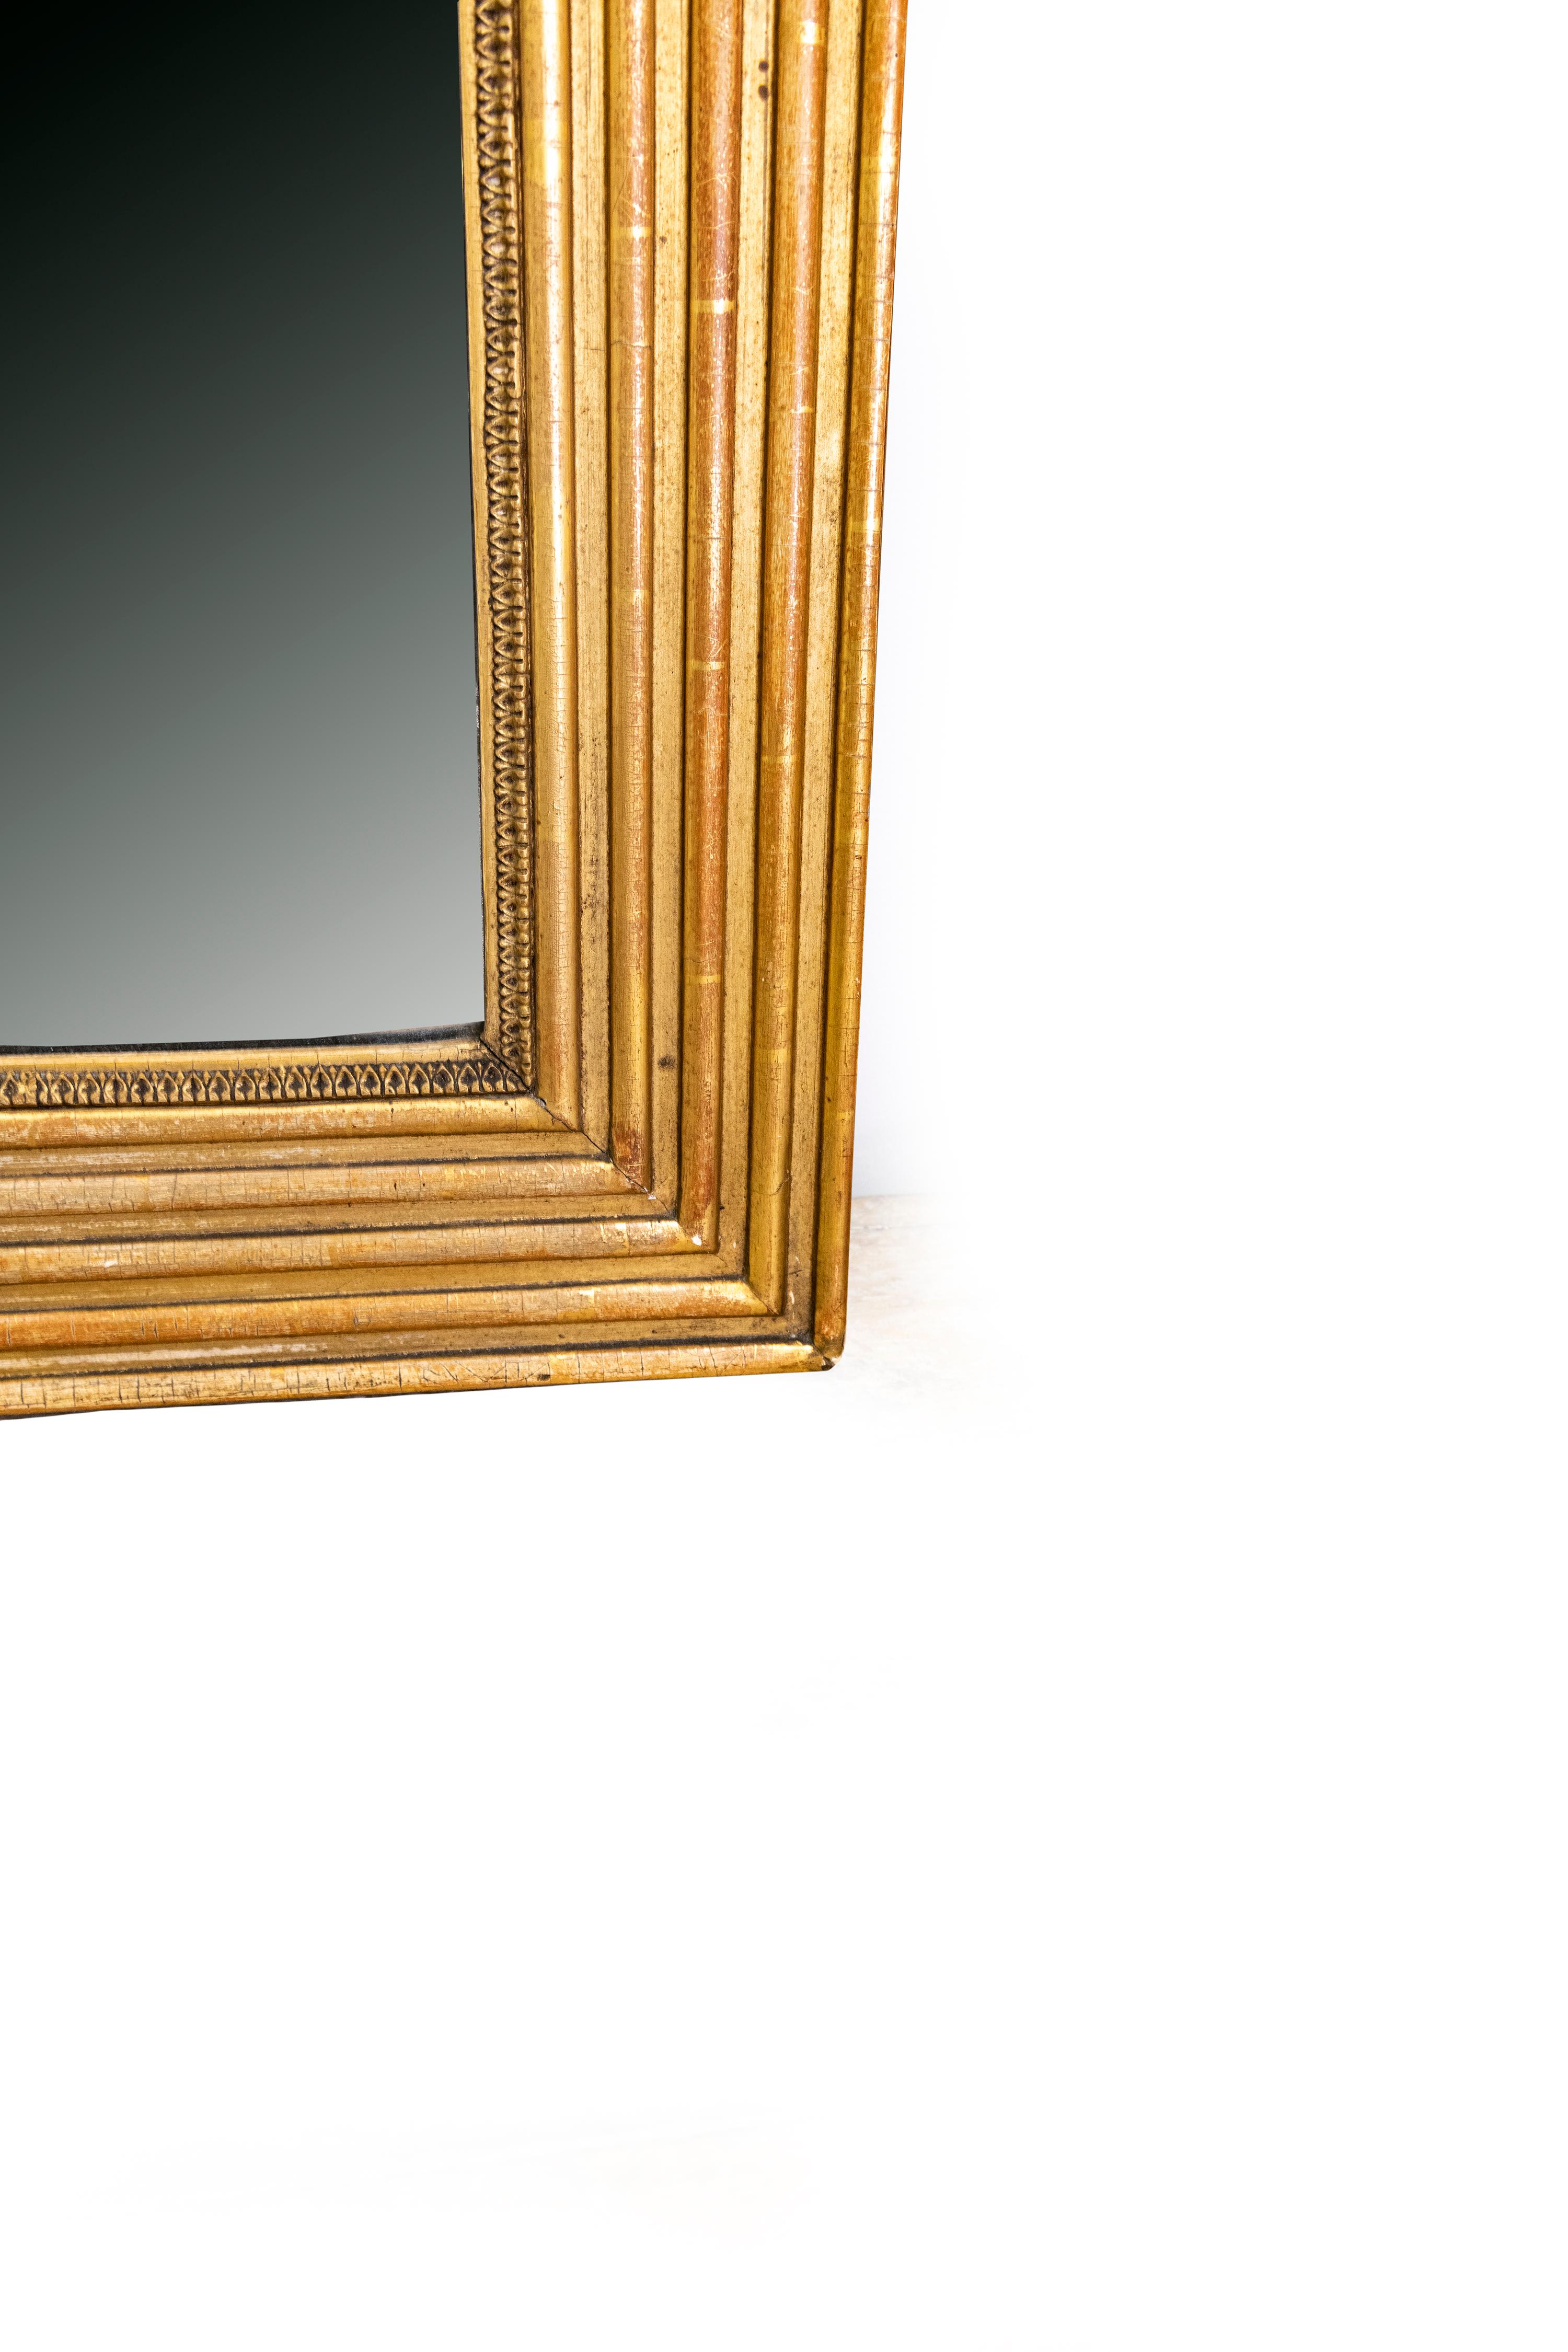 Le cadre est en bon état et les détails de la feuille d'acanthe sur le cadre intérieur sont très particuliers. La dorure est réalisée sur de la bole de Sienne. Le miroir lui-même est nuageux.